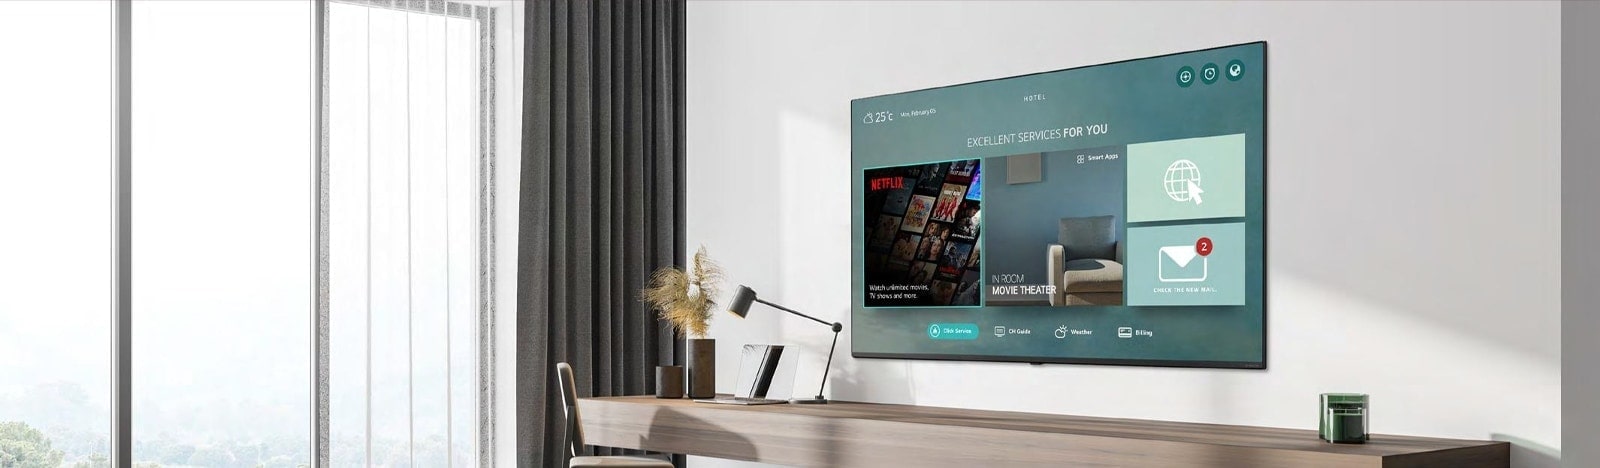 El contenido del hotel, incluida la aplicación Netflix, se muestra en la televisión dentro de la habitación del hotel.